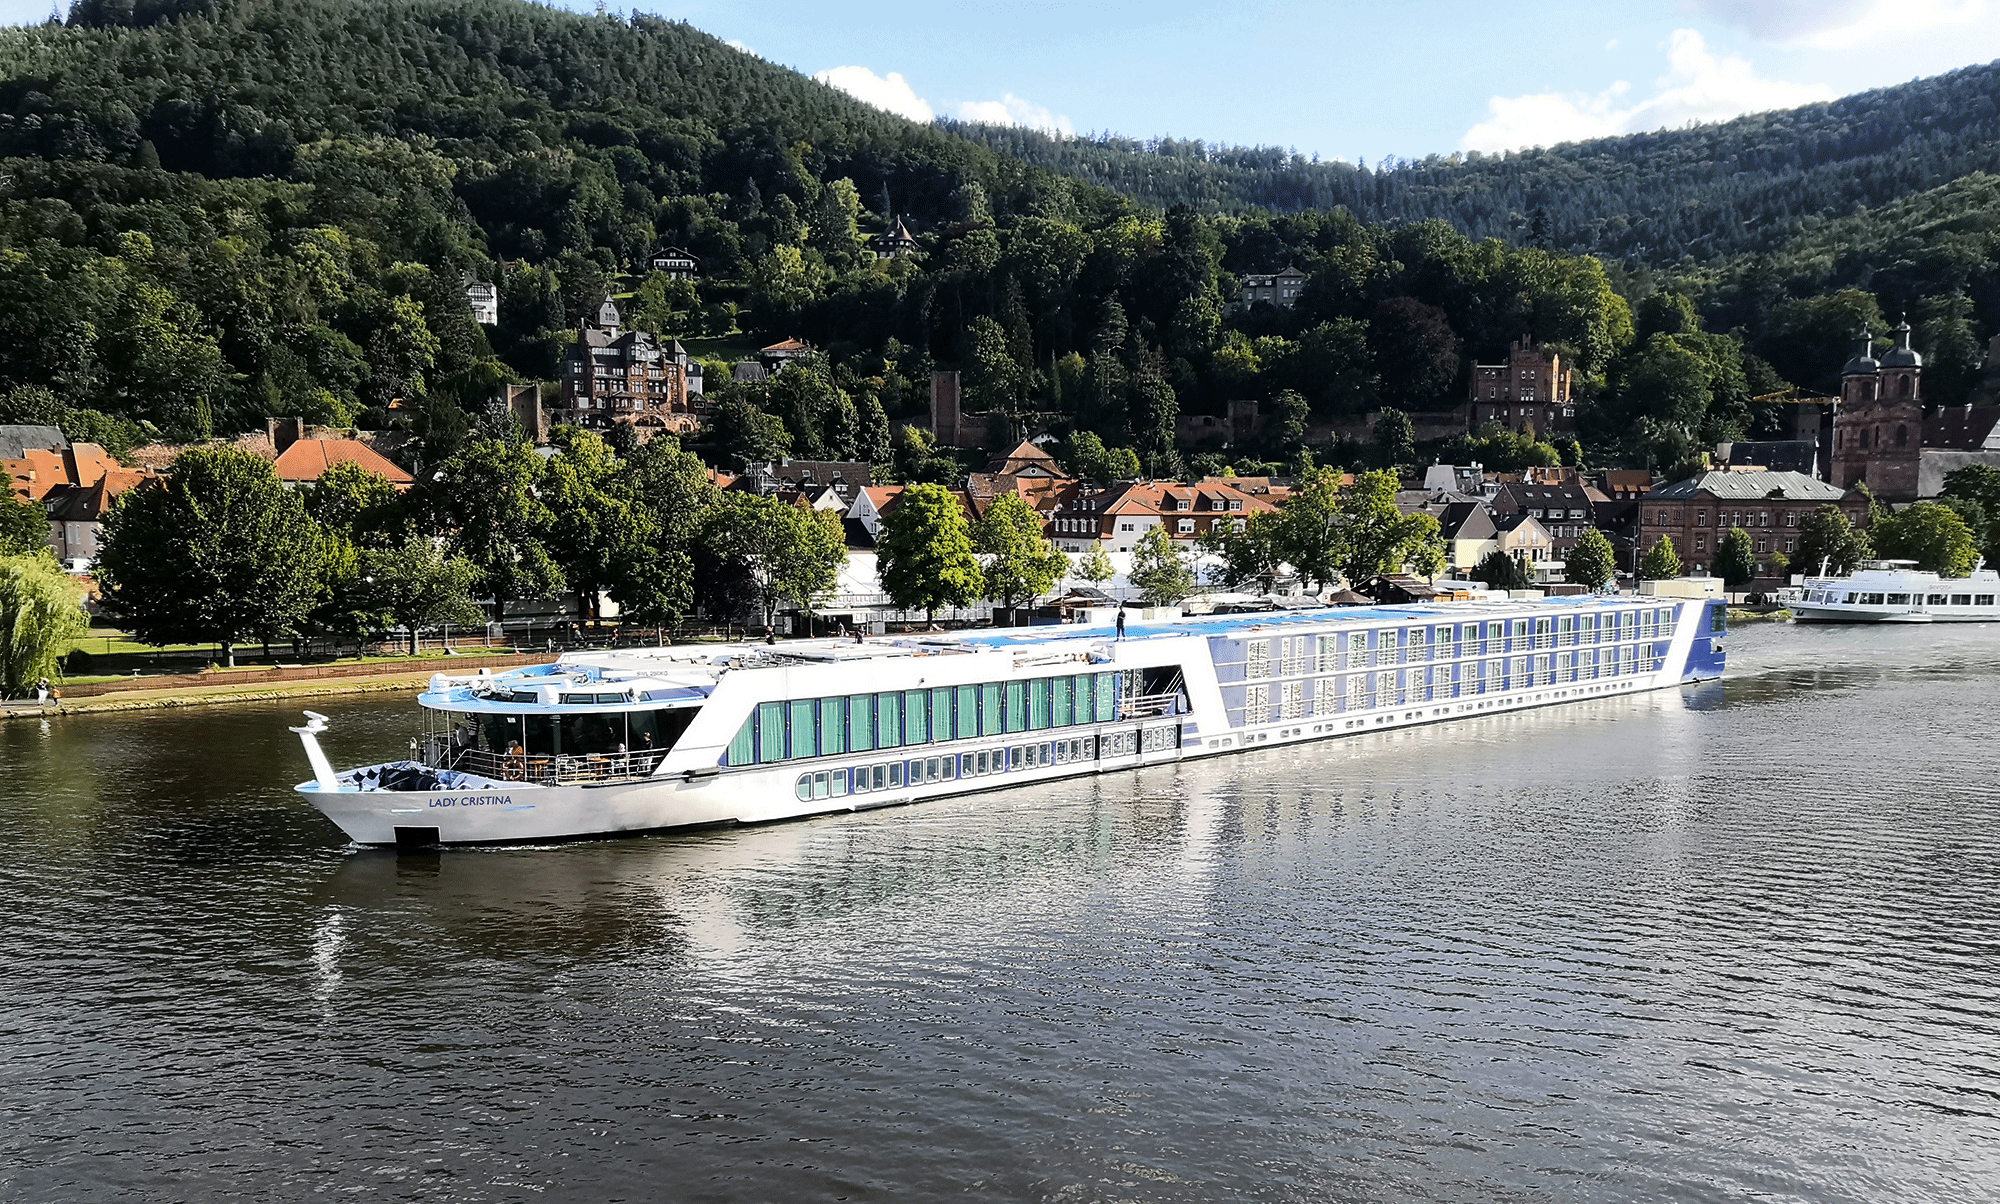 M/S Lady Cristina 10 Tage 3-Länderkreuzfahrt mit Romantischem Rhein